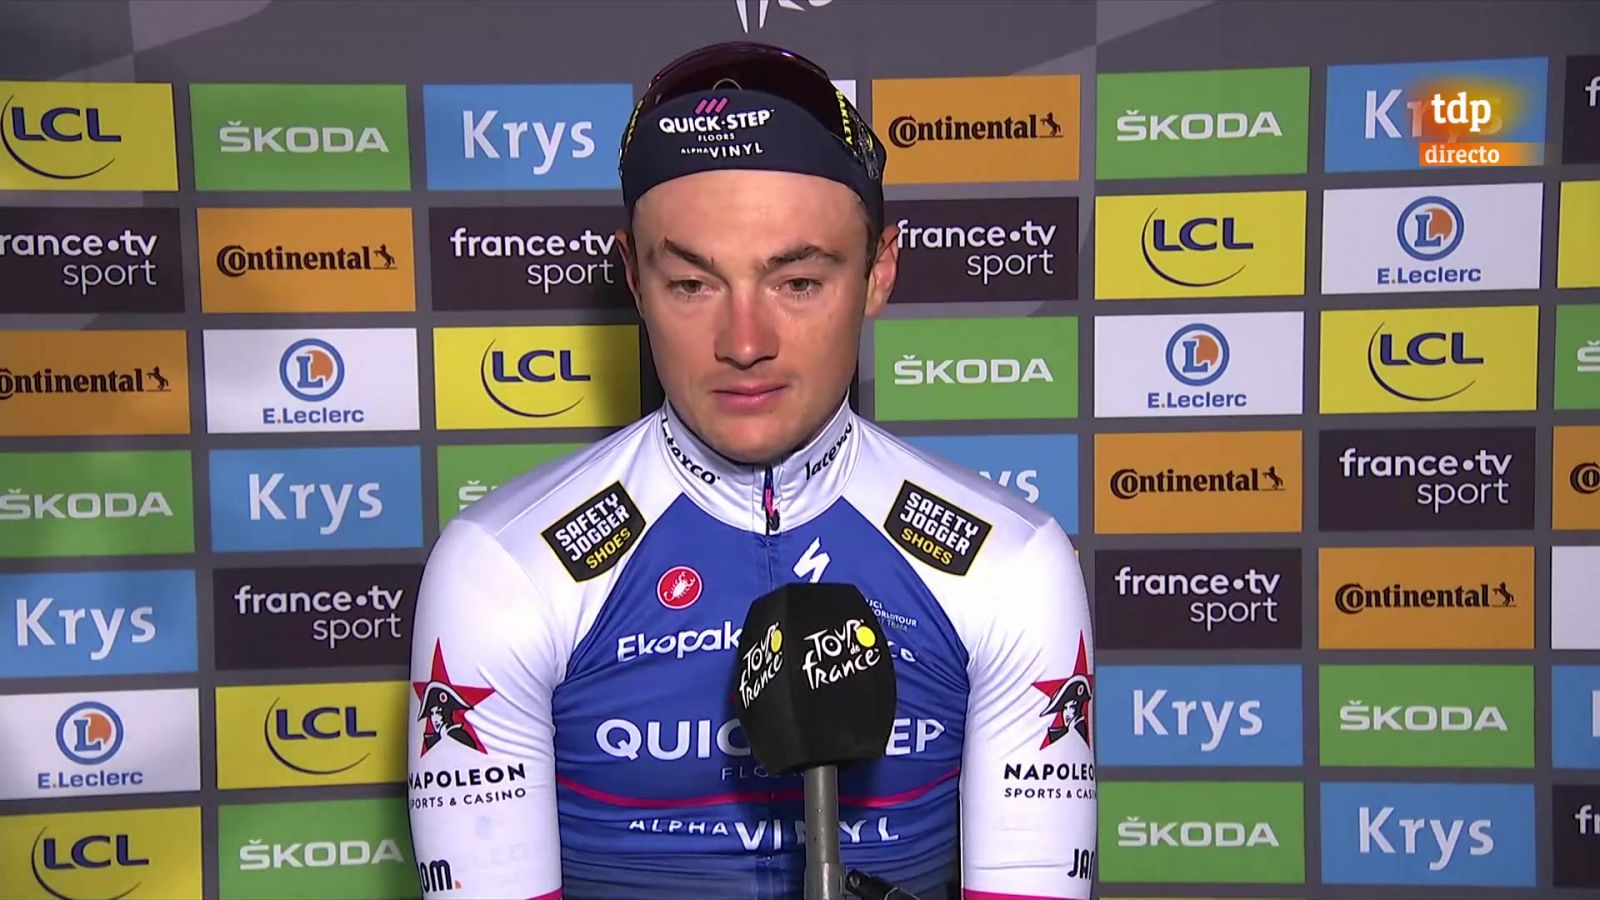 Lampaert, emocionadísimo: "Ganar la primera etapa del Tour es algo que ni había soñado" -- Ver ahora